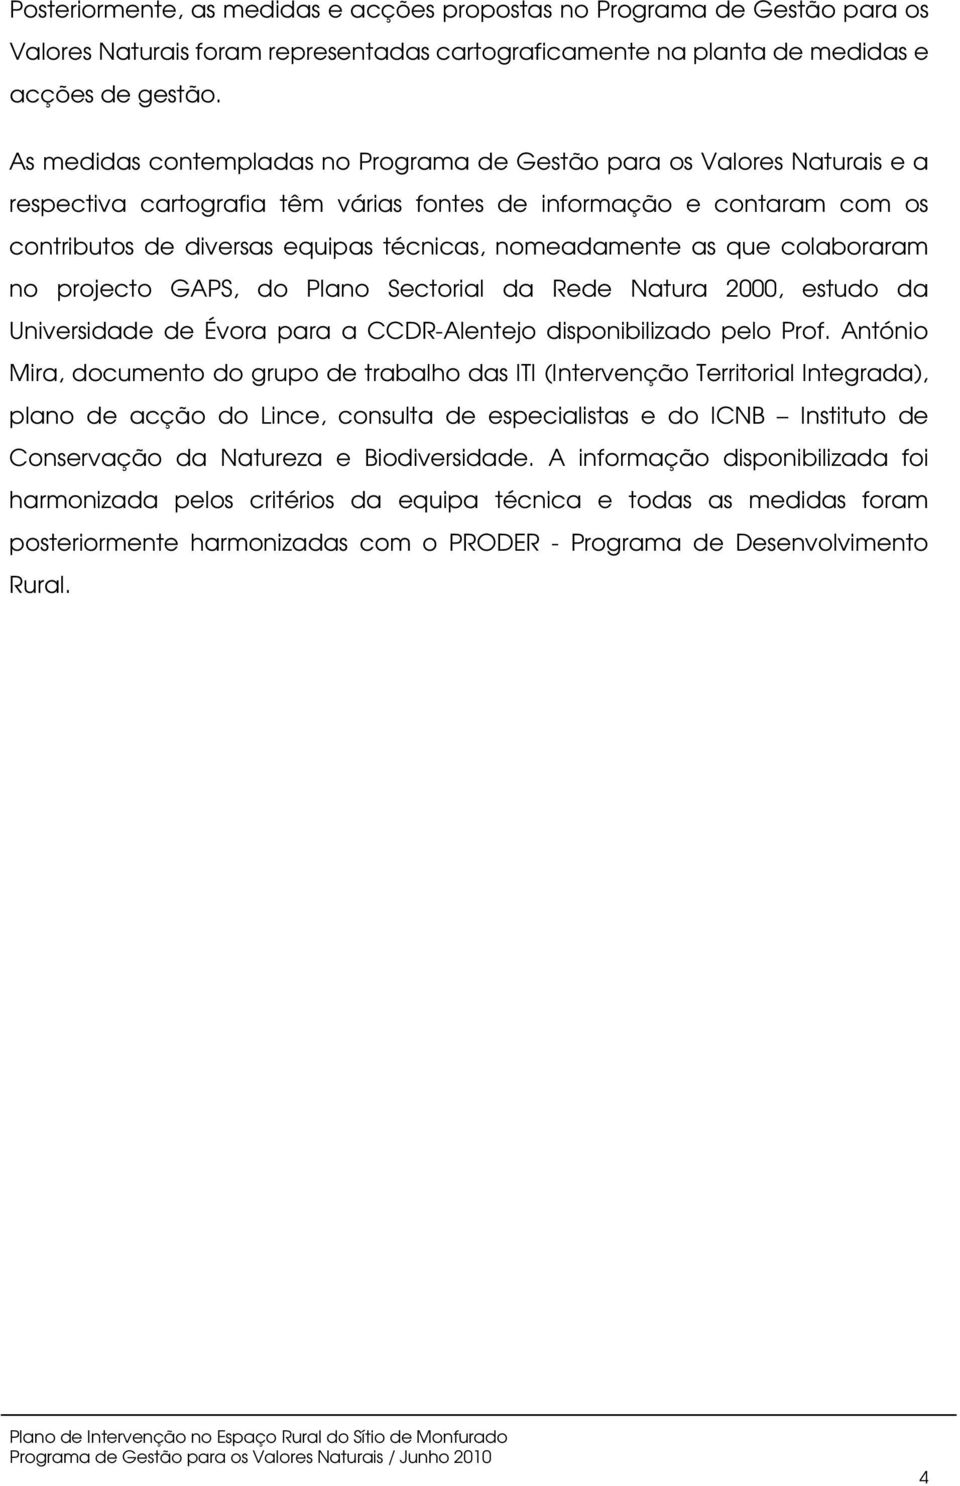 nomeadamente as que colaboraram no projecto GAPS, do Plano Sectorial da Rede Natura 2000, estudo da Universidade de Évora para a CCDR-Alentejo disponibilizado pelo Prof.